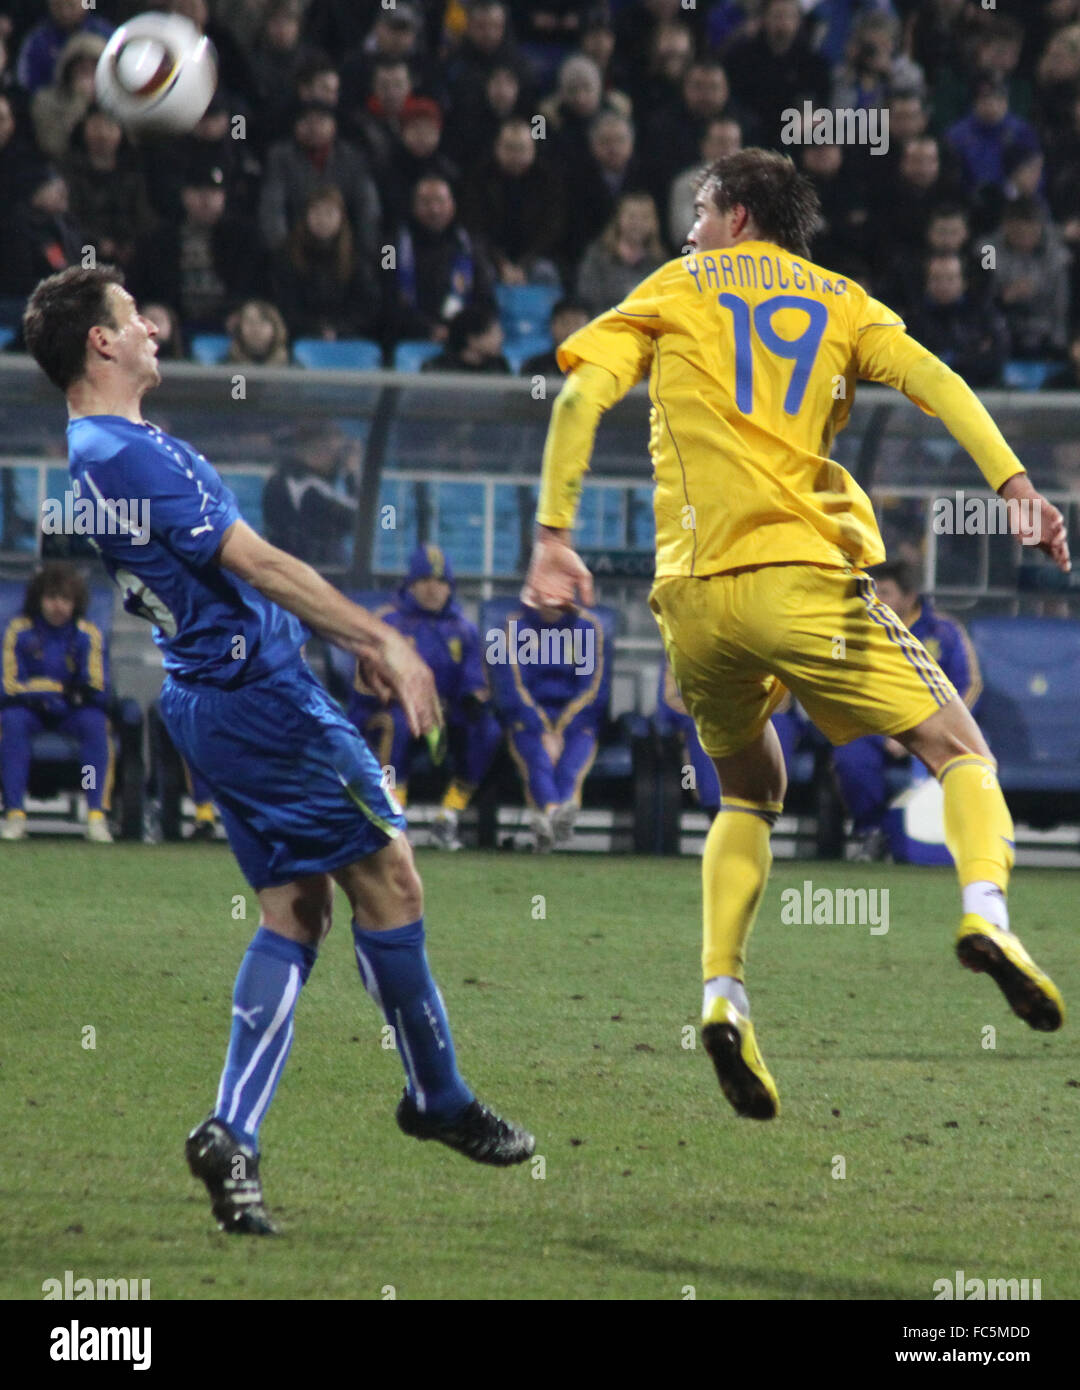 Kiew, UKRAINE - März 29: Andriy Yarmolenko von Ukraine (R) kämpft für einen Ball mit Daniele Gastaldello Italiens während ihrer Freundschaftsspiel am 29. März 2011 in Kiew, Ukraine Stockfoto